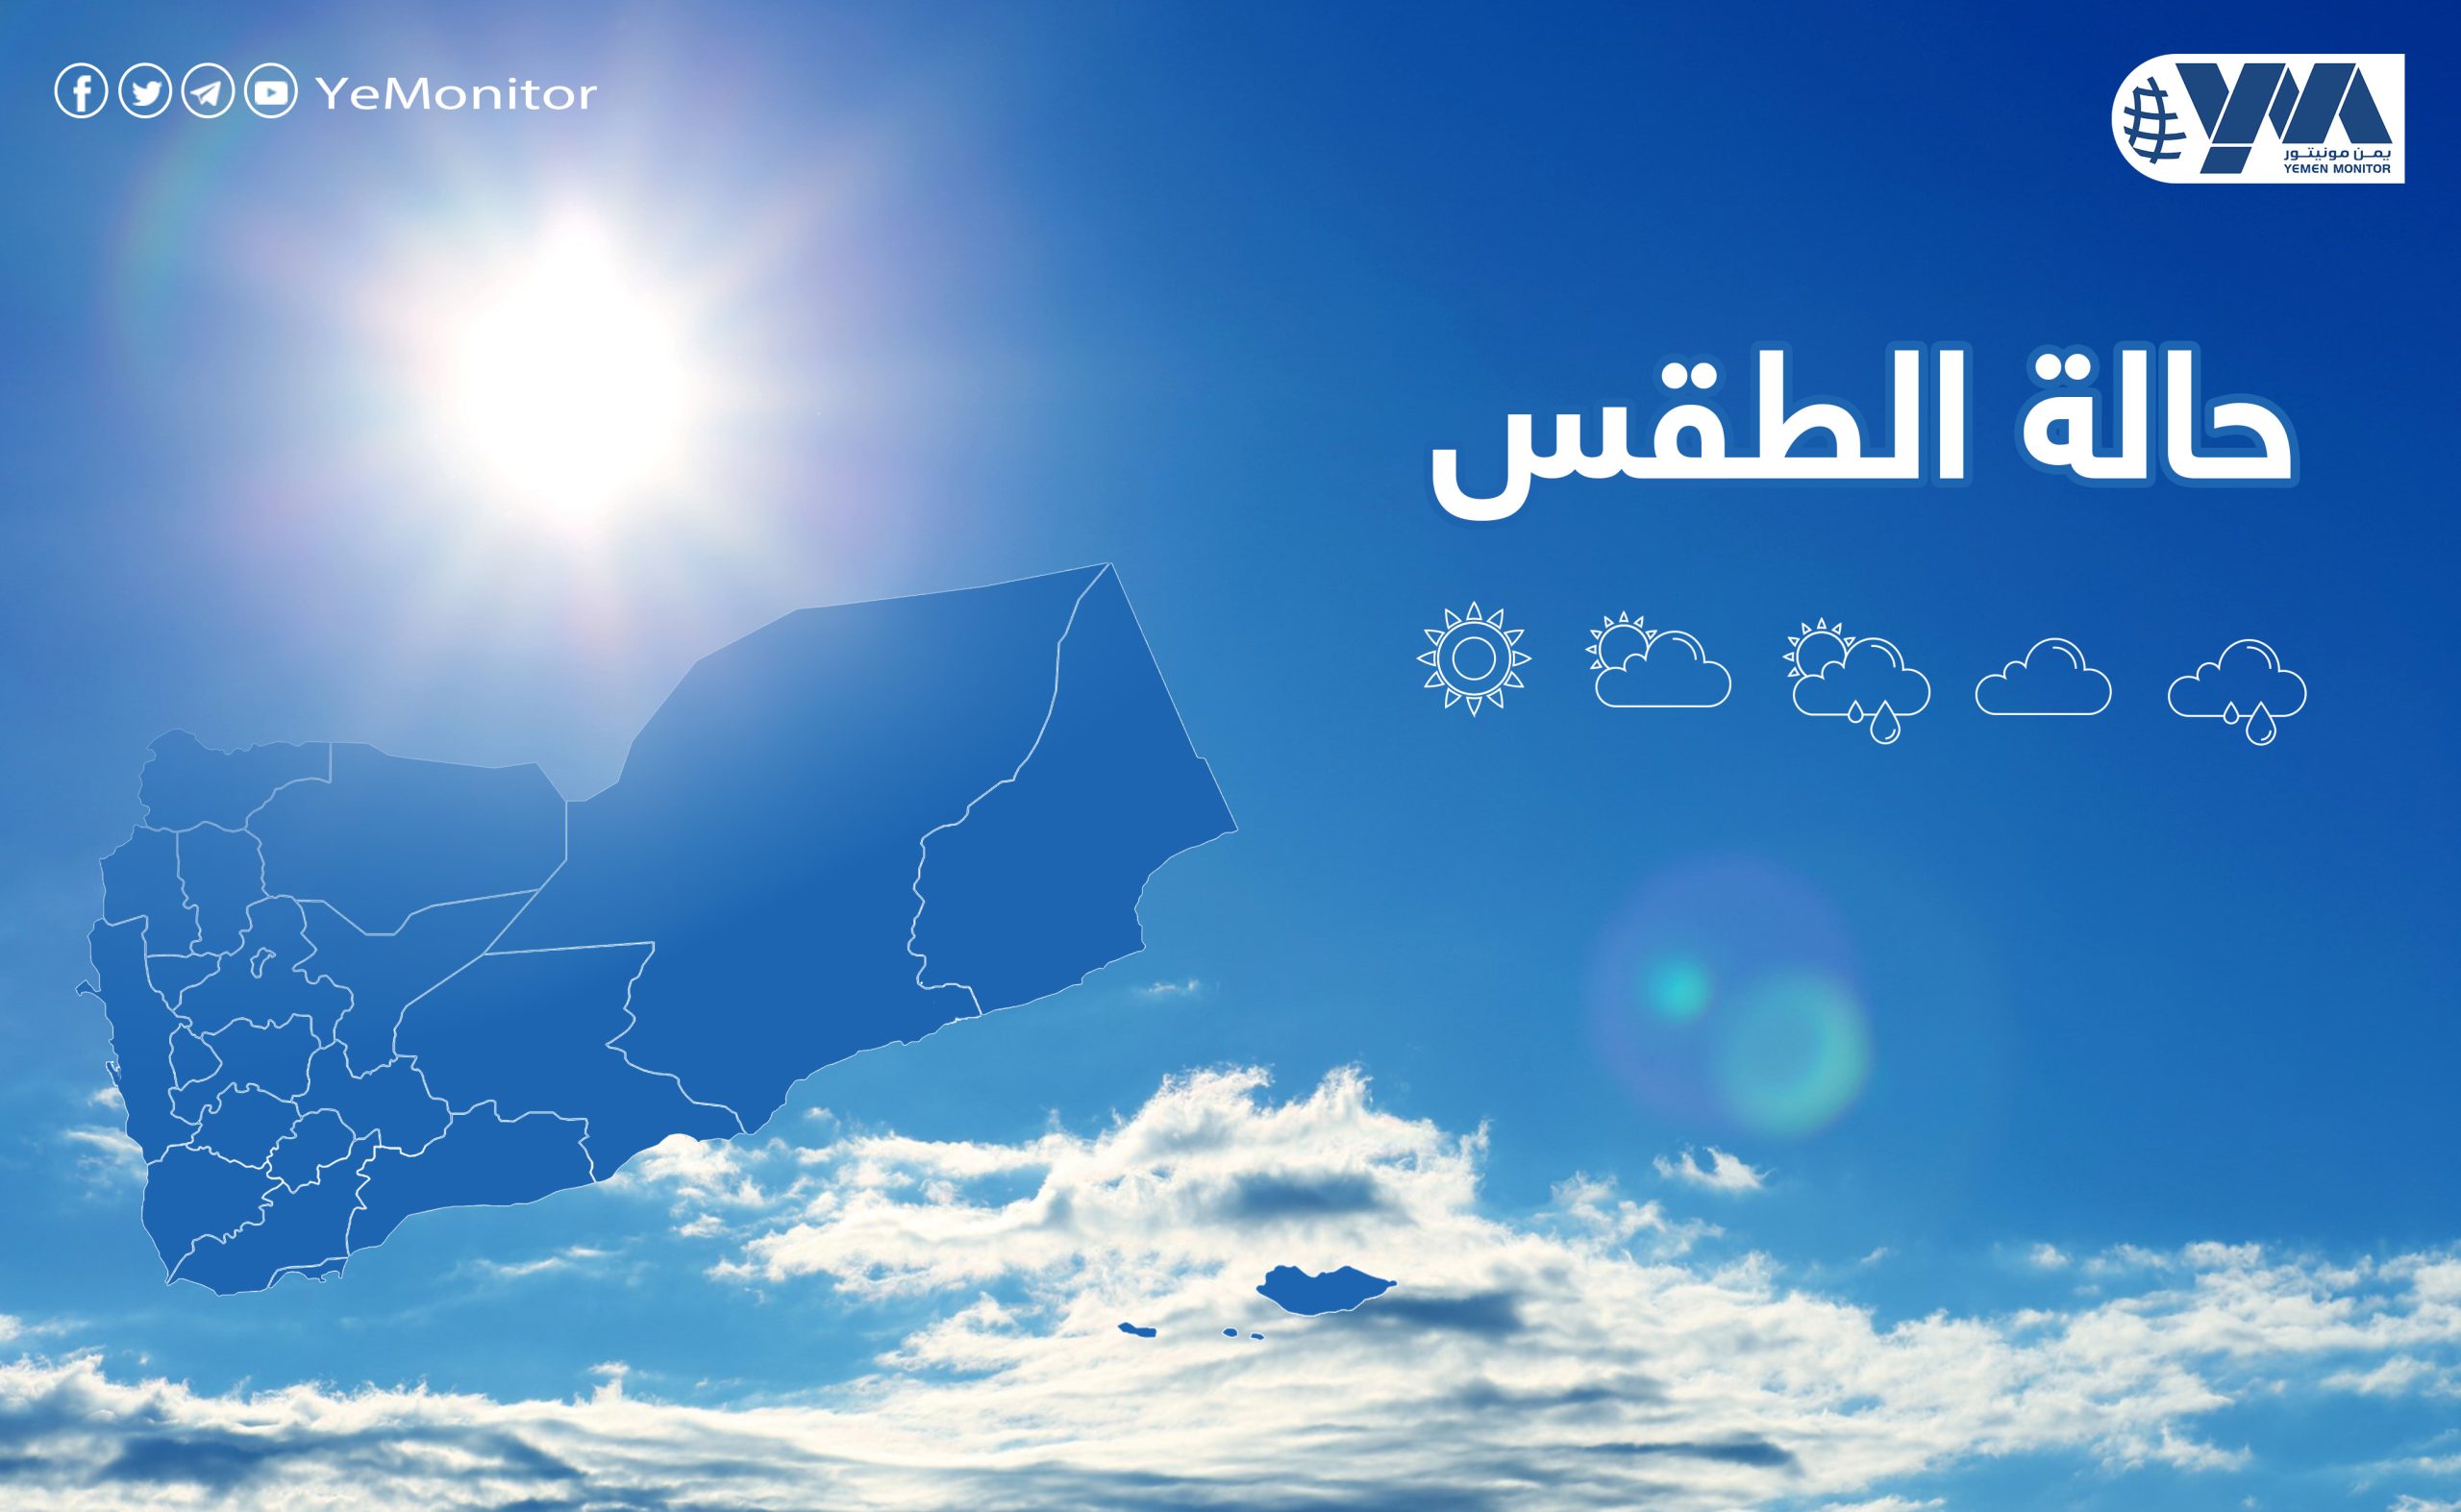 “الأرصاد اليمني” يتوقع أجواء غائمة مع احتمال تكون سحب ركامية ممطرة